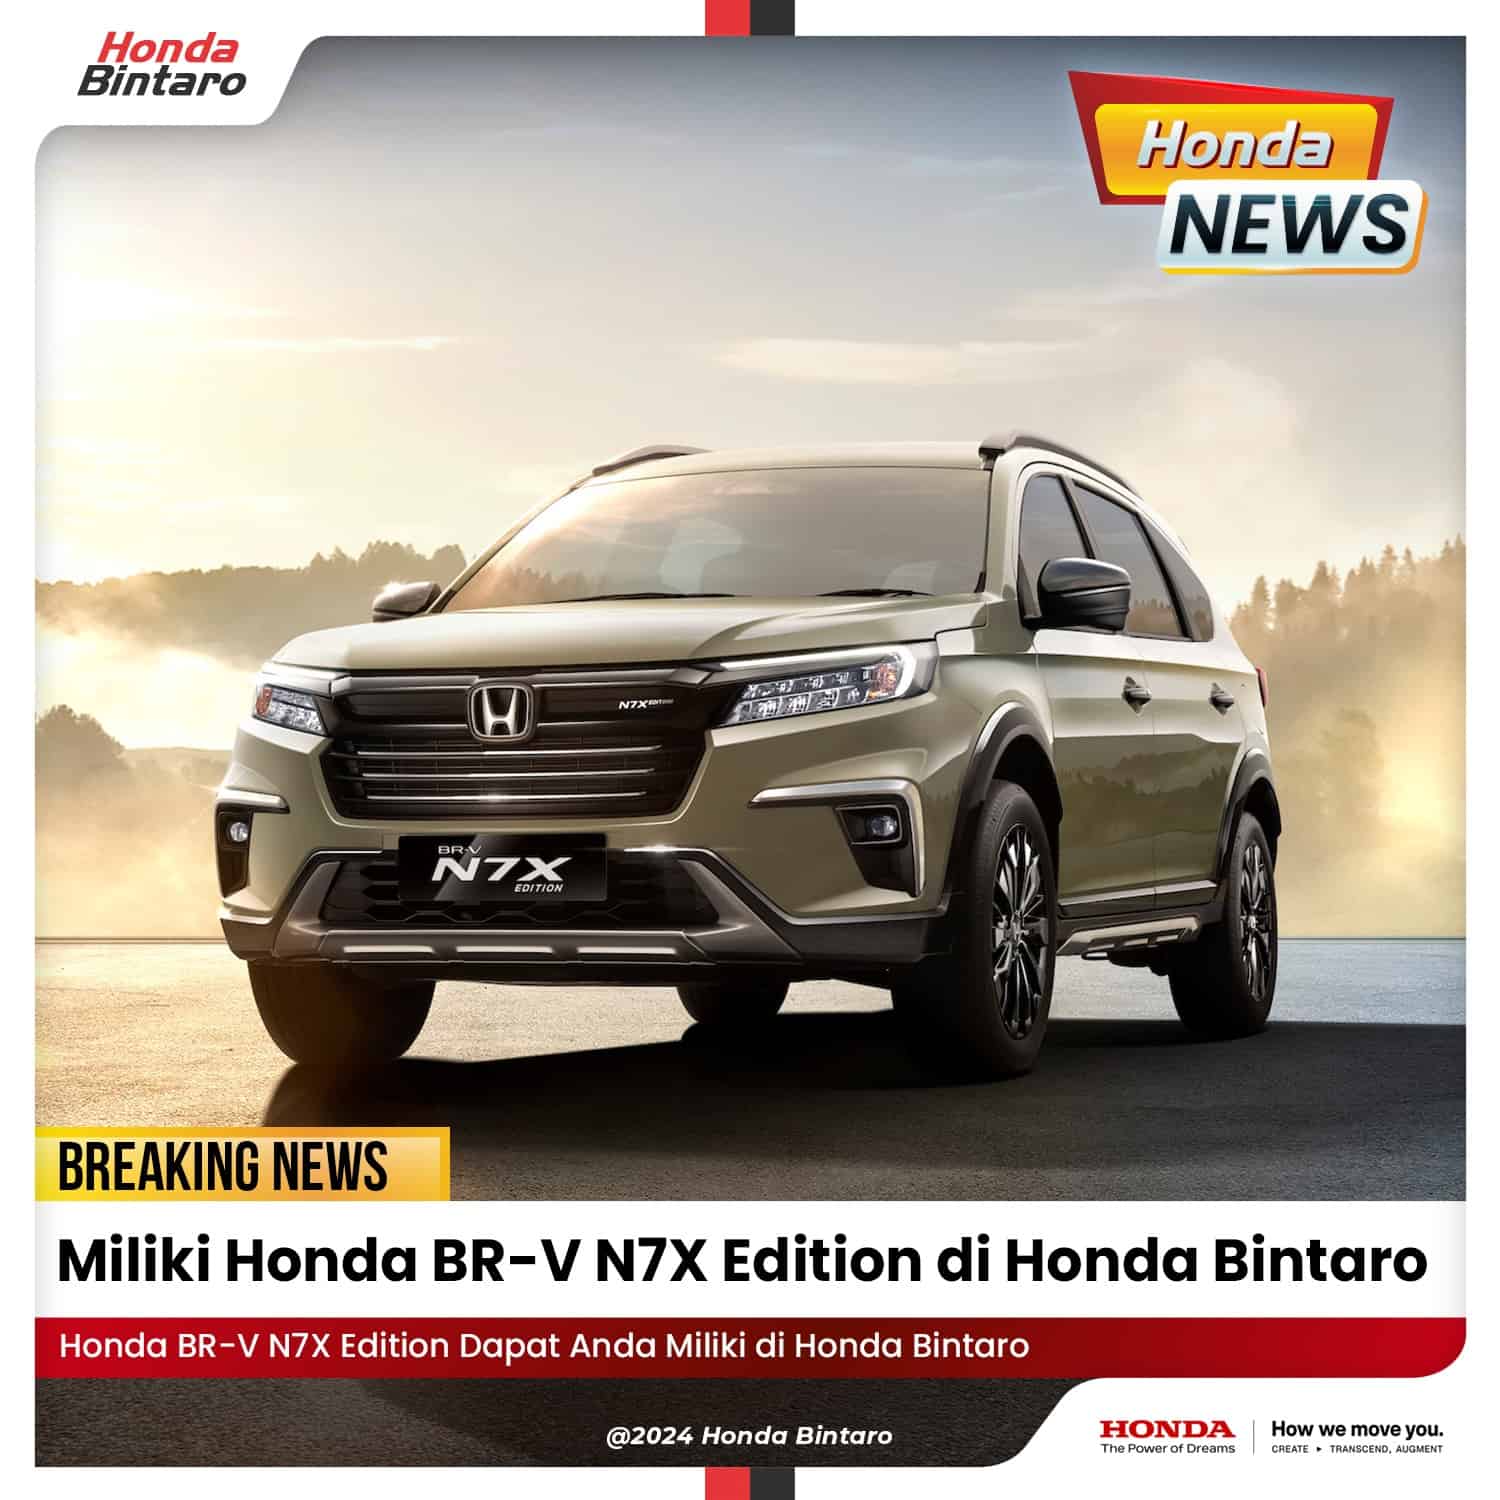 Miliki Honda BR-V N7X Edition di Honda Bintaro